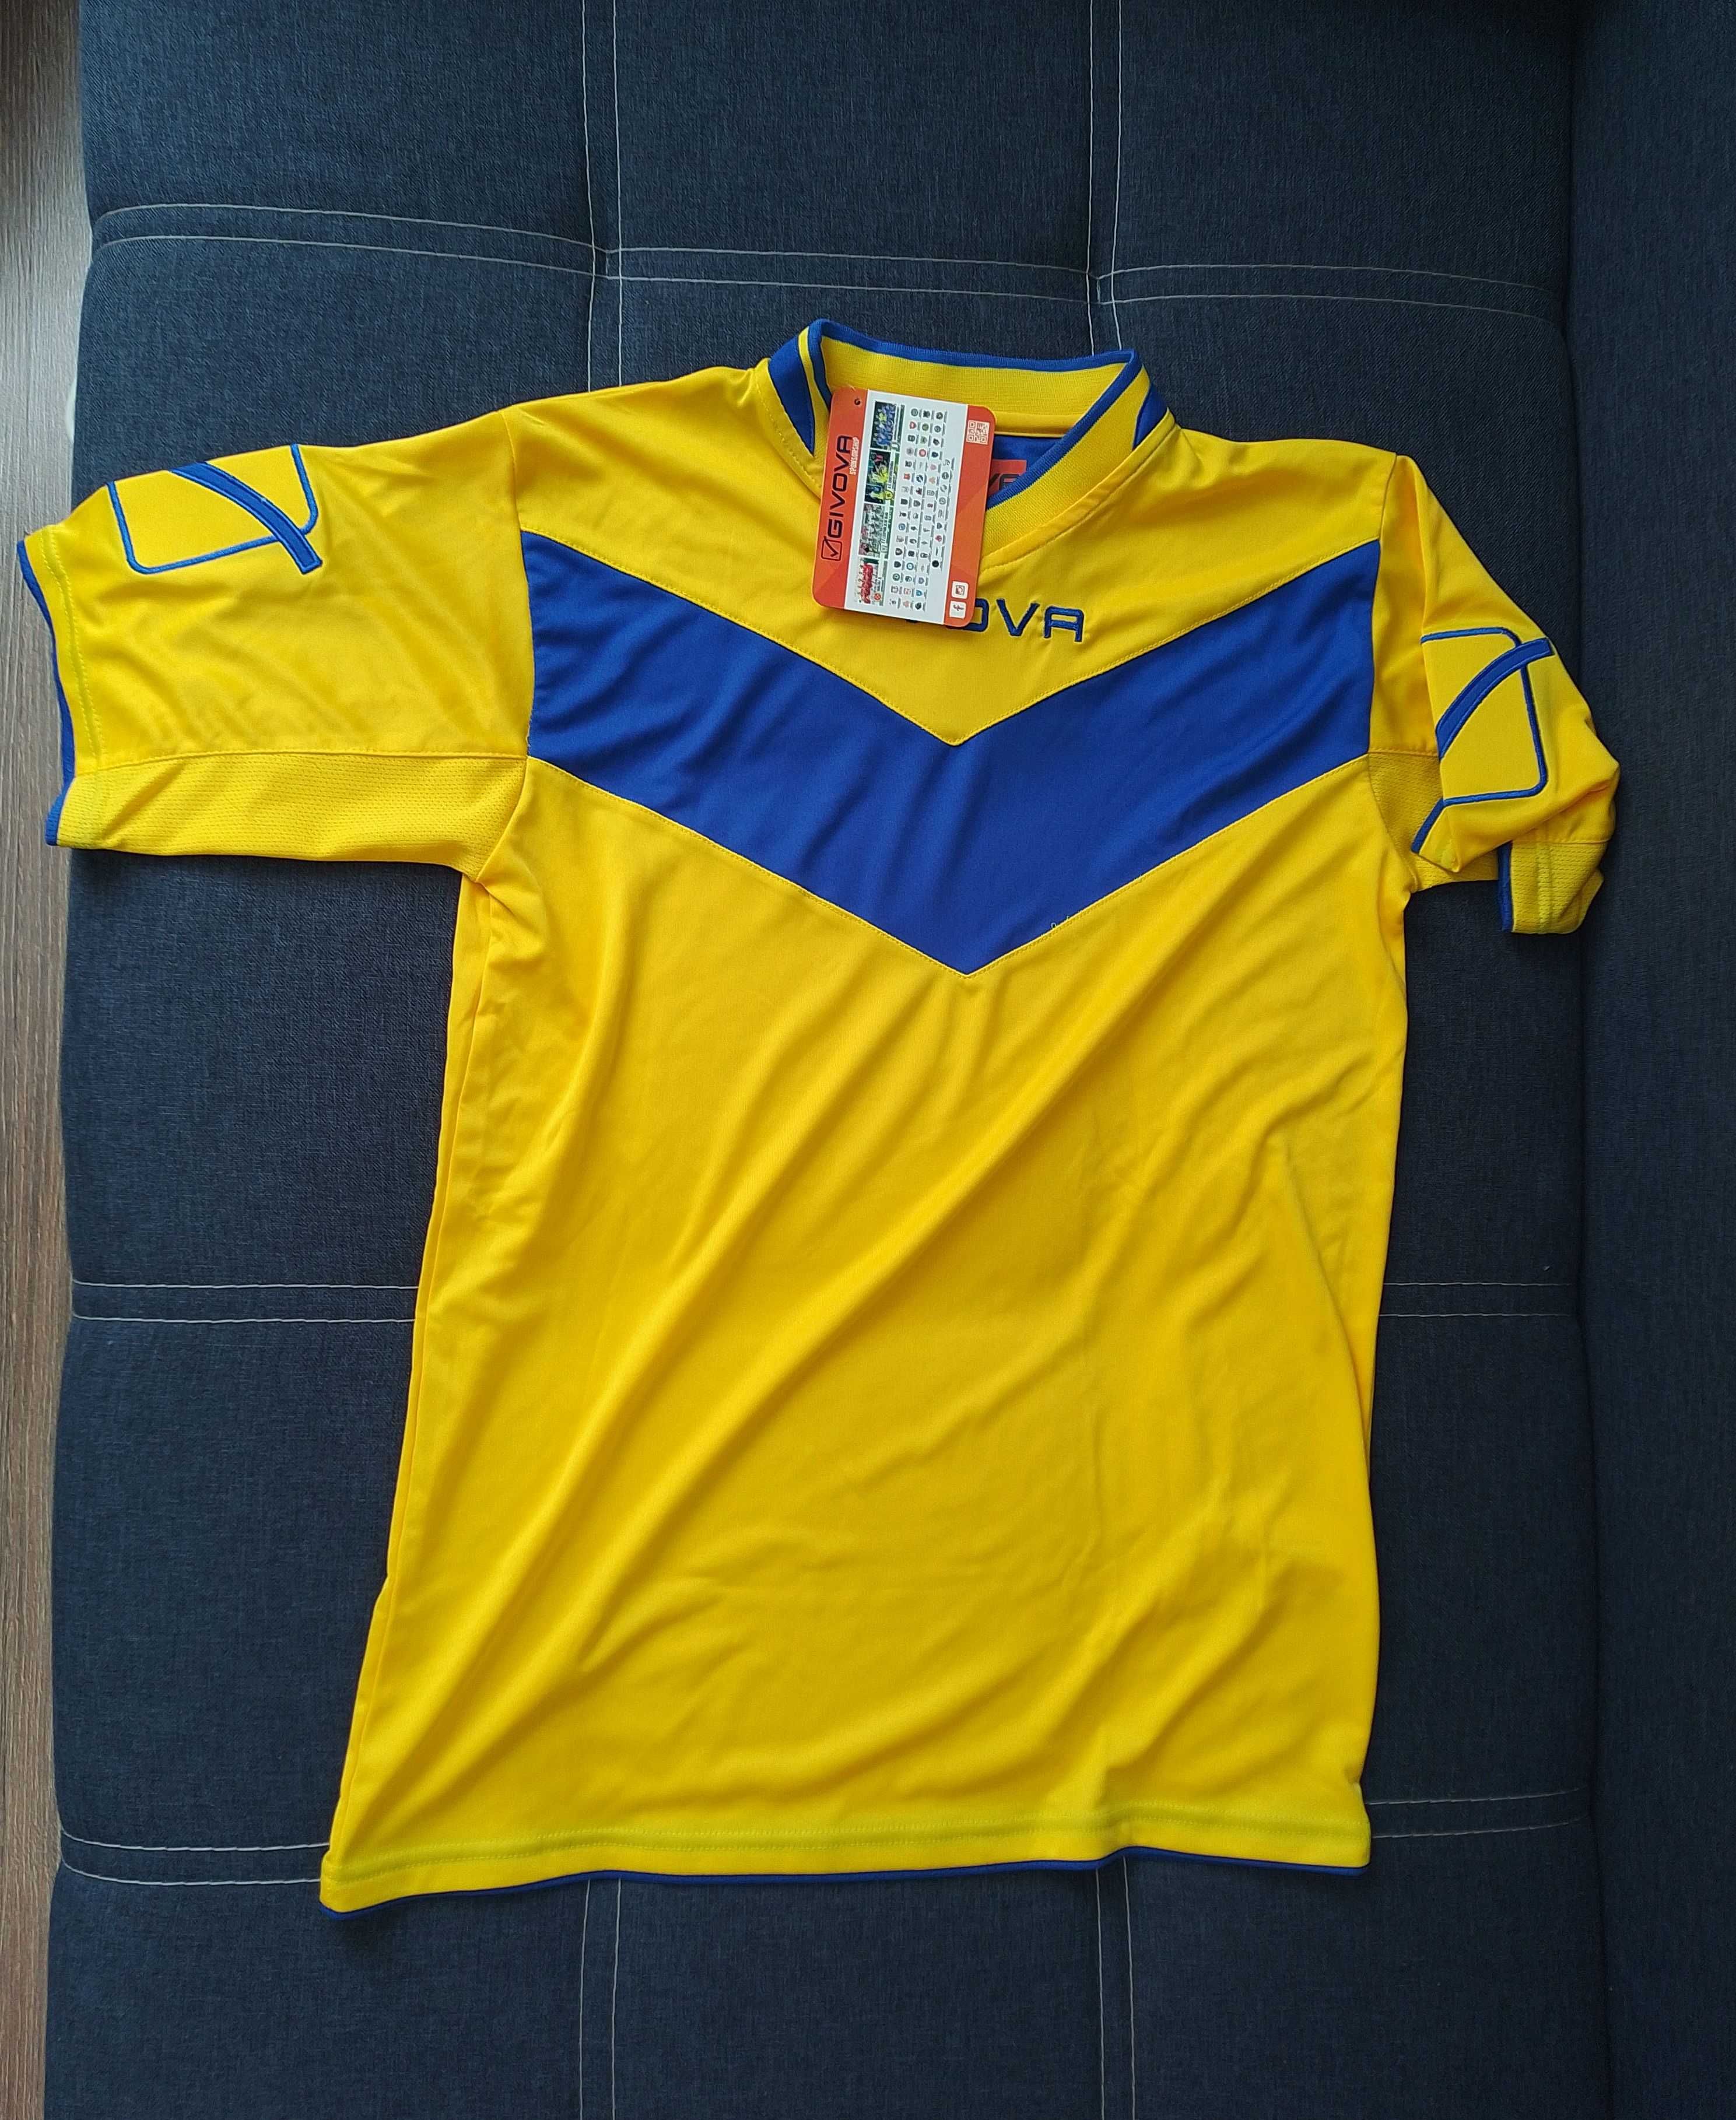 Жёлто синий спортивный костюм Givova футболка + шорты размер S (44)